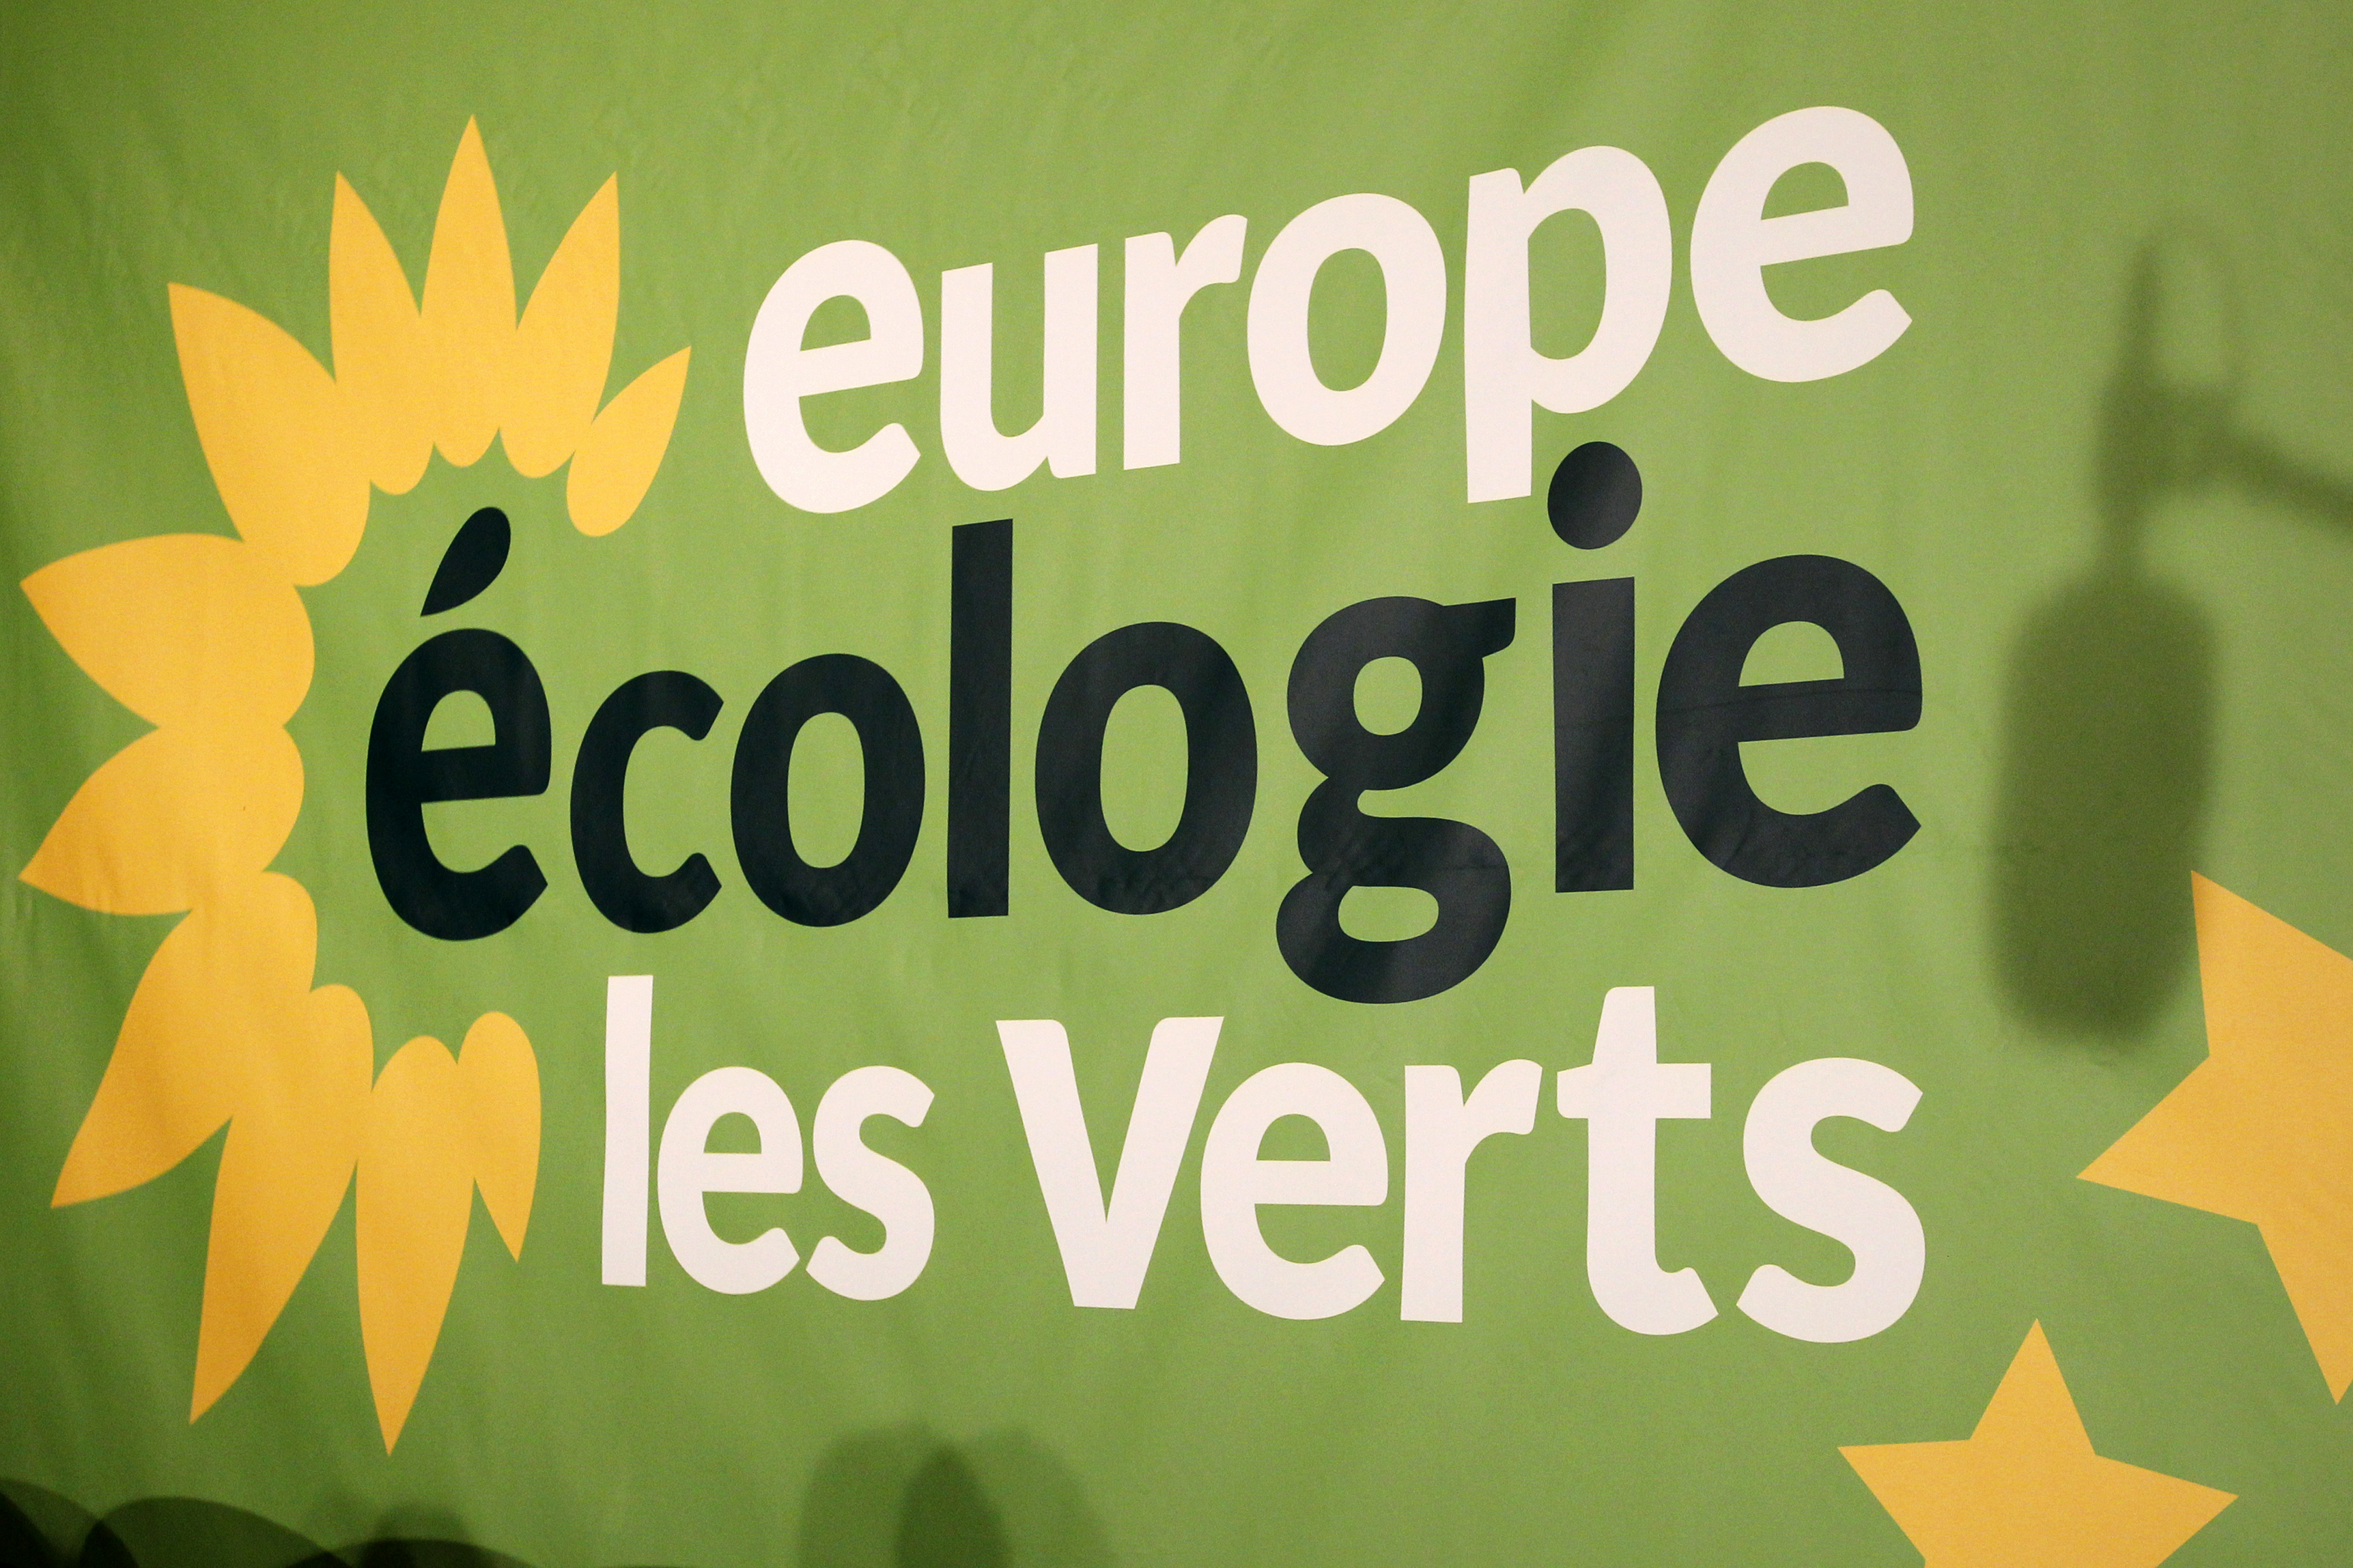 Municipales à Paris: les Verts surenchérissent sur la transition écologique